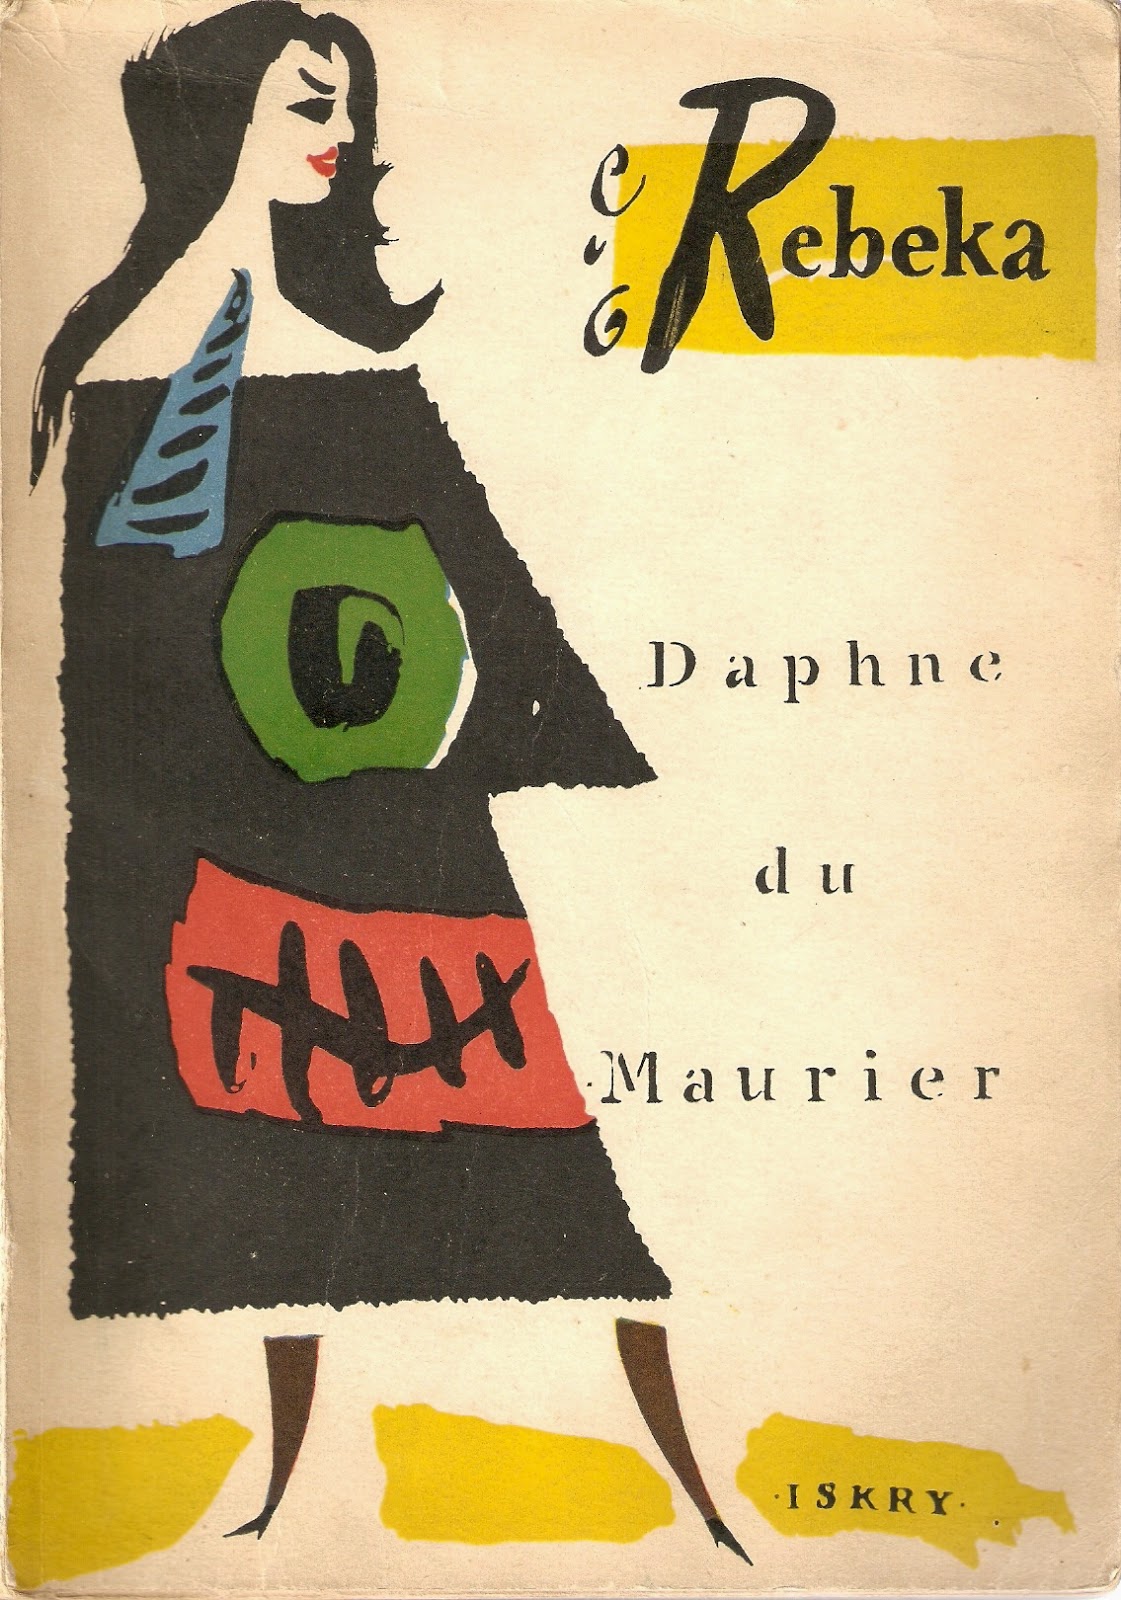 Znalezione obrazy dla zapytania Daphne du Maurier : Rebeka 1958